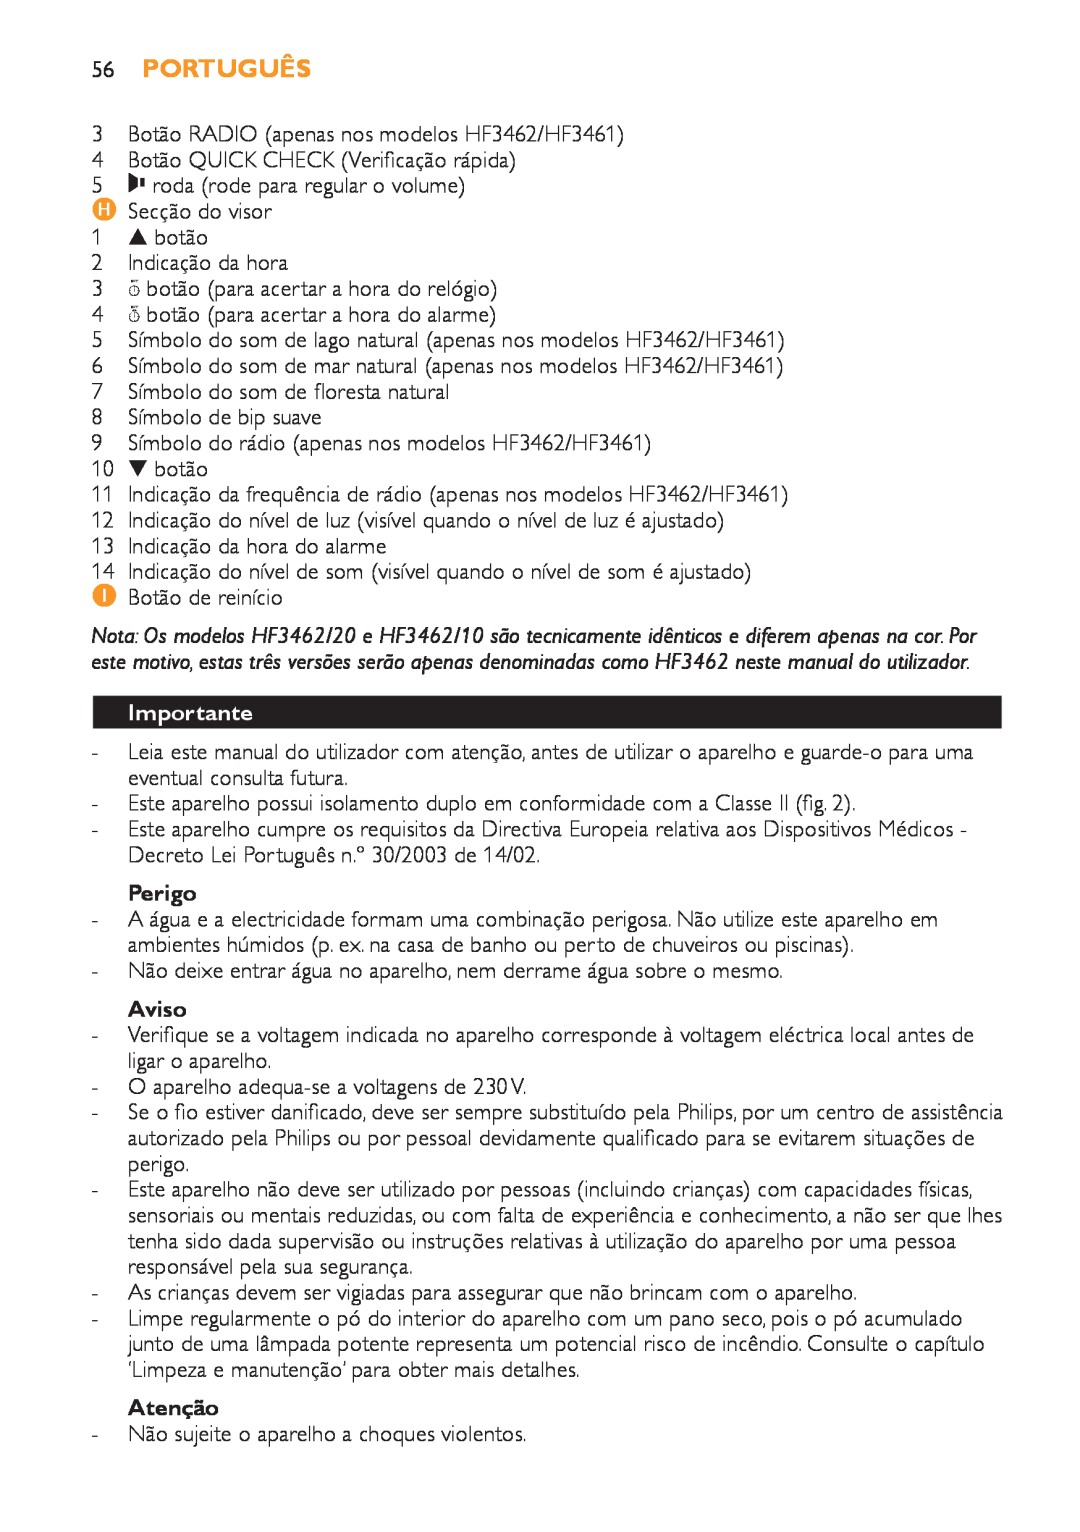 Philips HF3451 manual 56Português, Perigo, Aviso, Atenção, Importante 